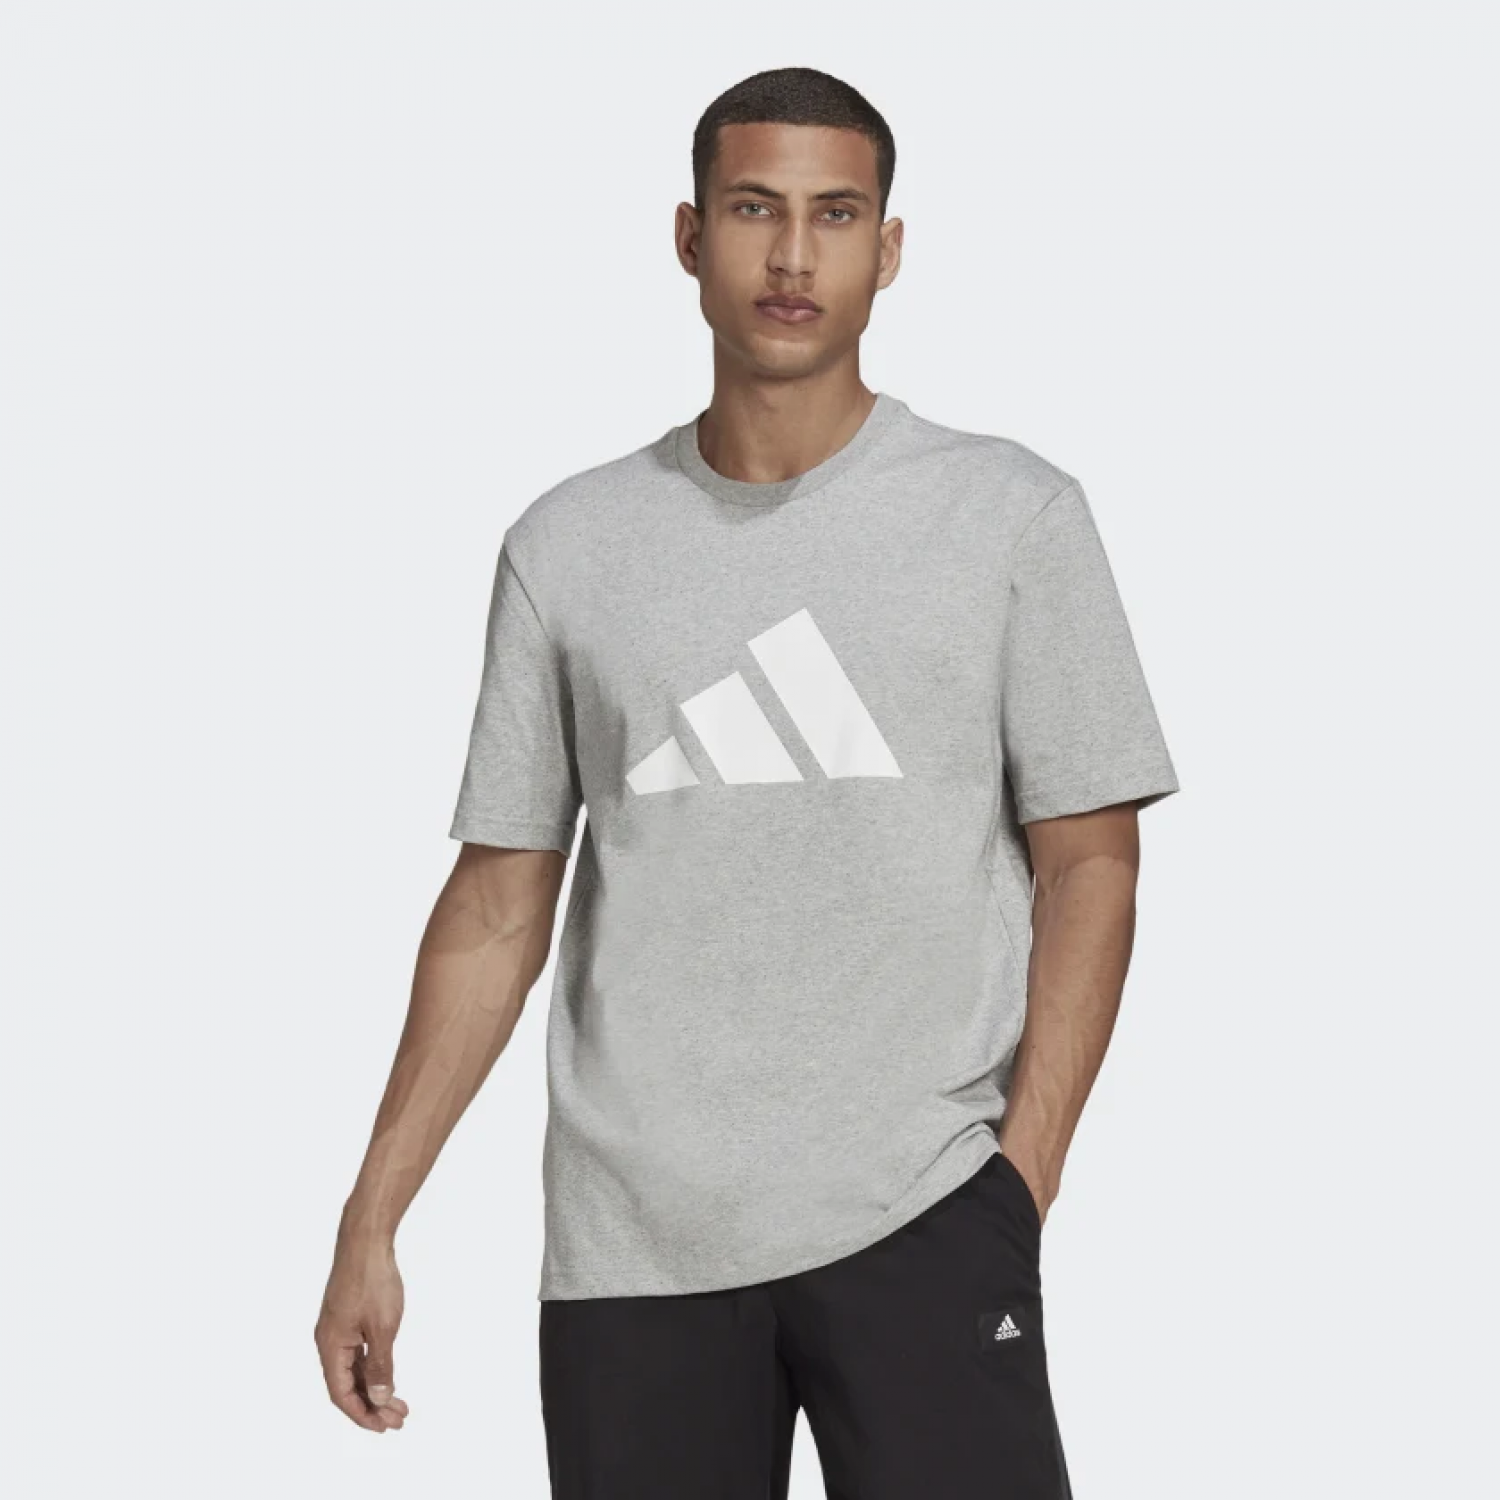 5540 - Adidas Grey Tshirt 3-Stripes | Item Details - Easy Sole